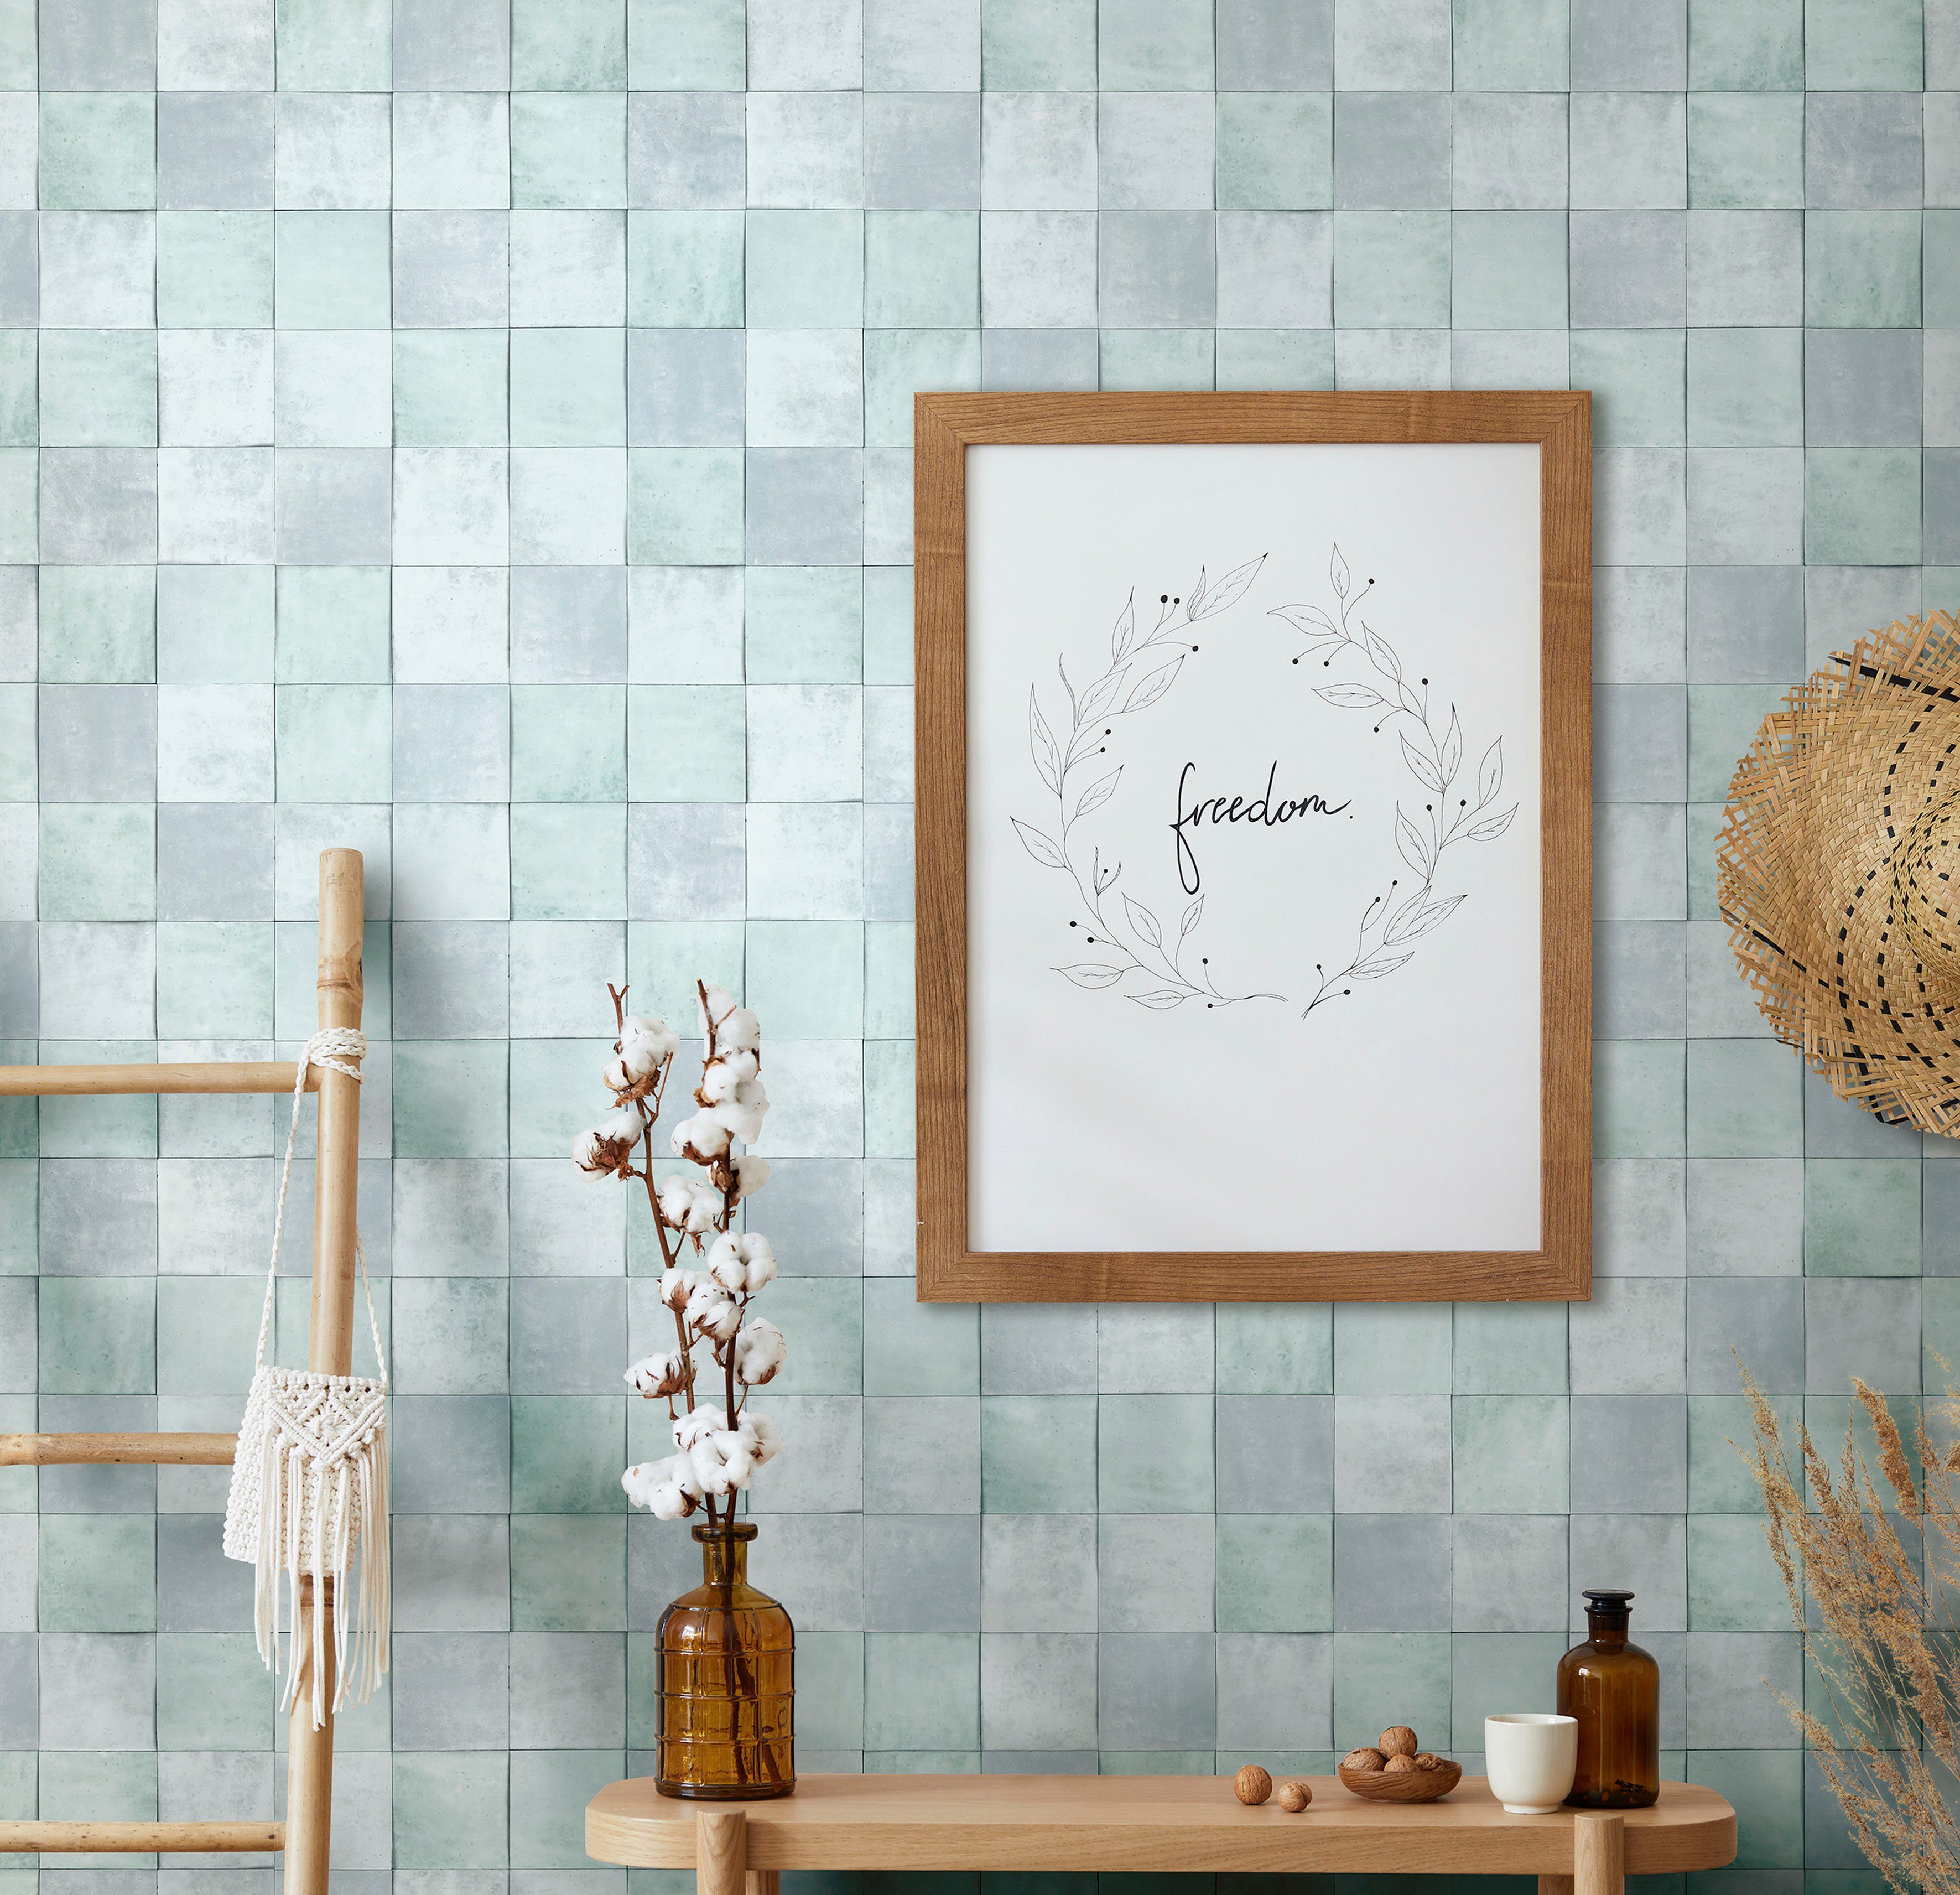 Marburg Fototapete Tile, glatt, matt, moderne Vliestapete für Wohnzimmer Schlafzimmer Küche helles-Schiefergrau